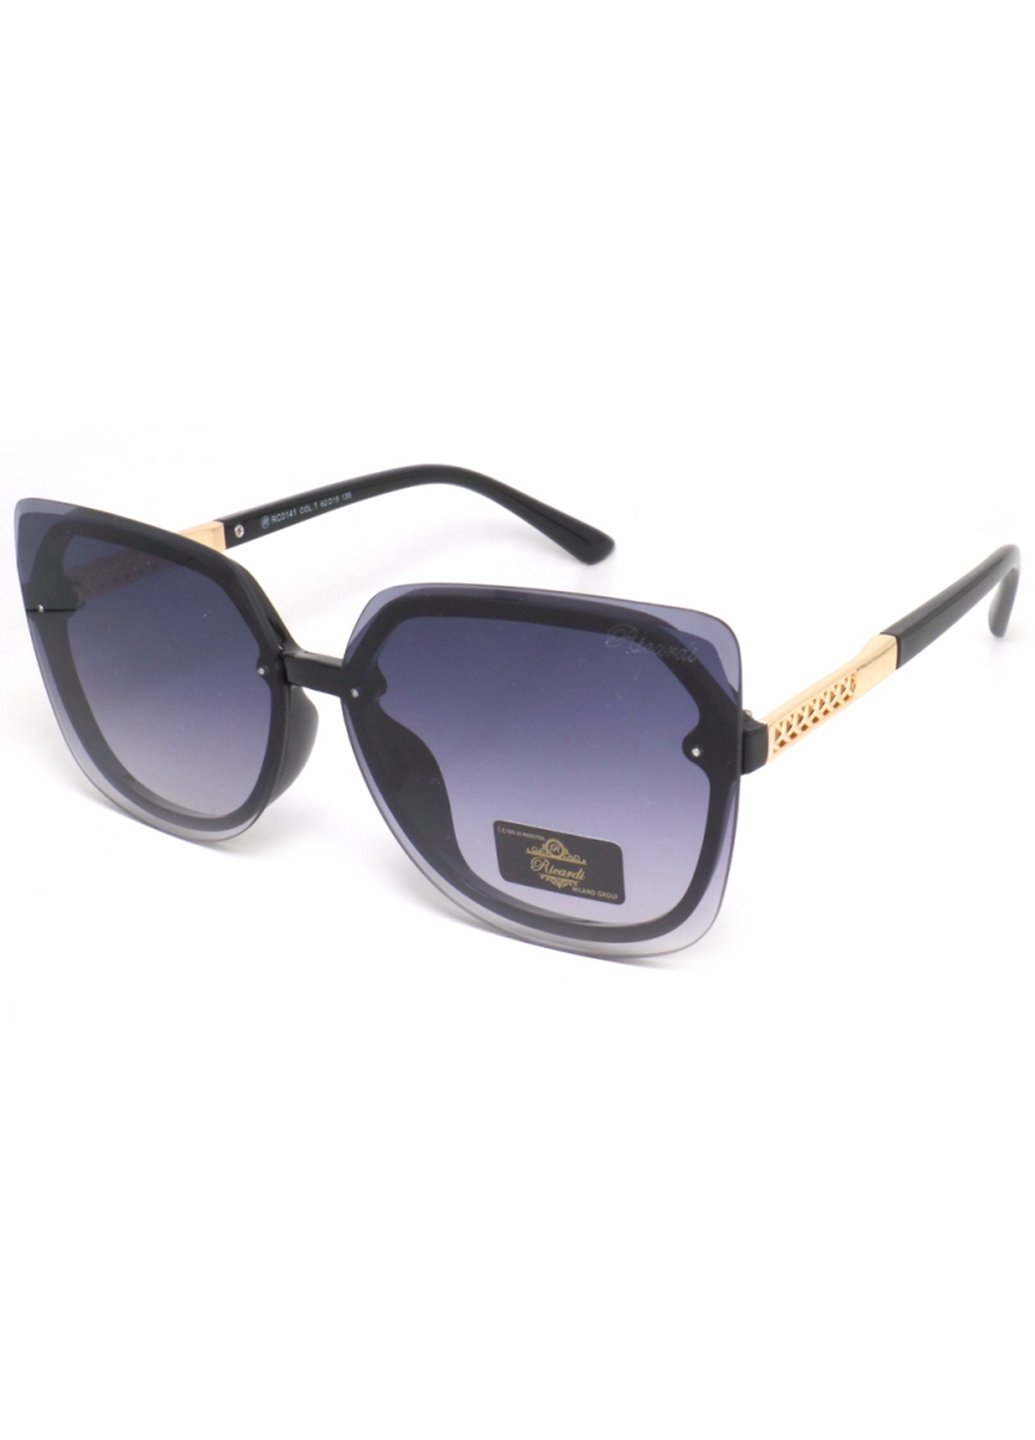 Купить Женские солнцезащитные очки Ricardi RC0141 110001 - Черный в интернет-магазине